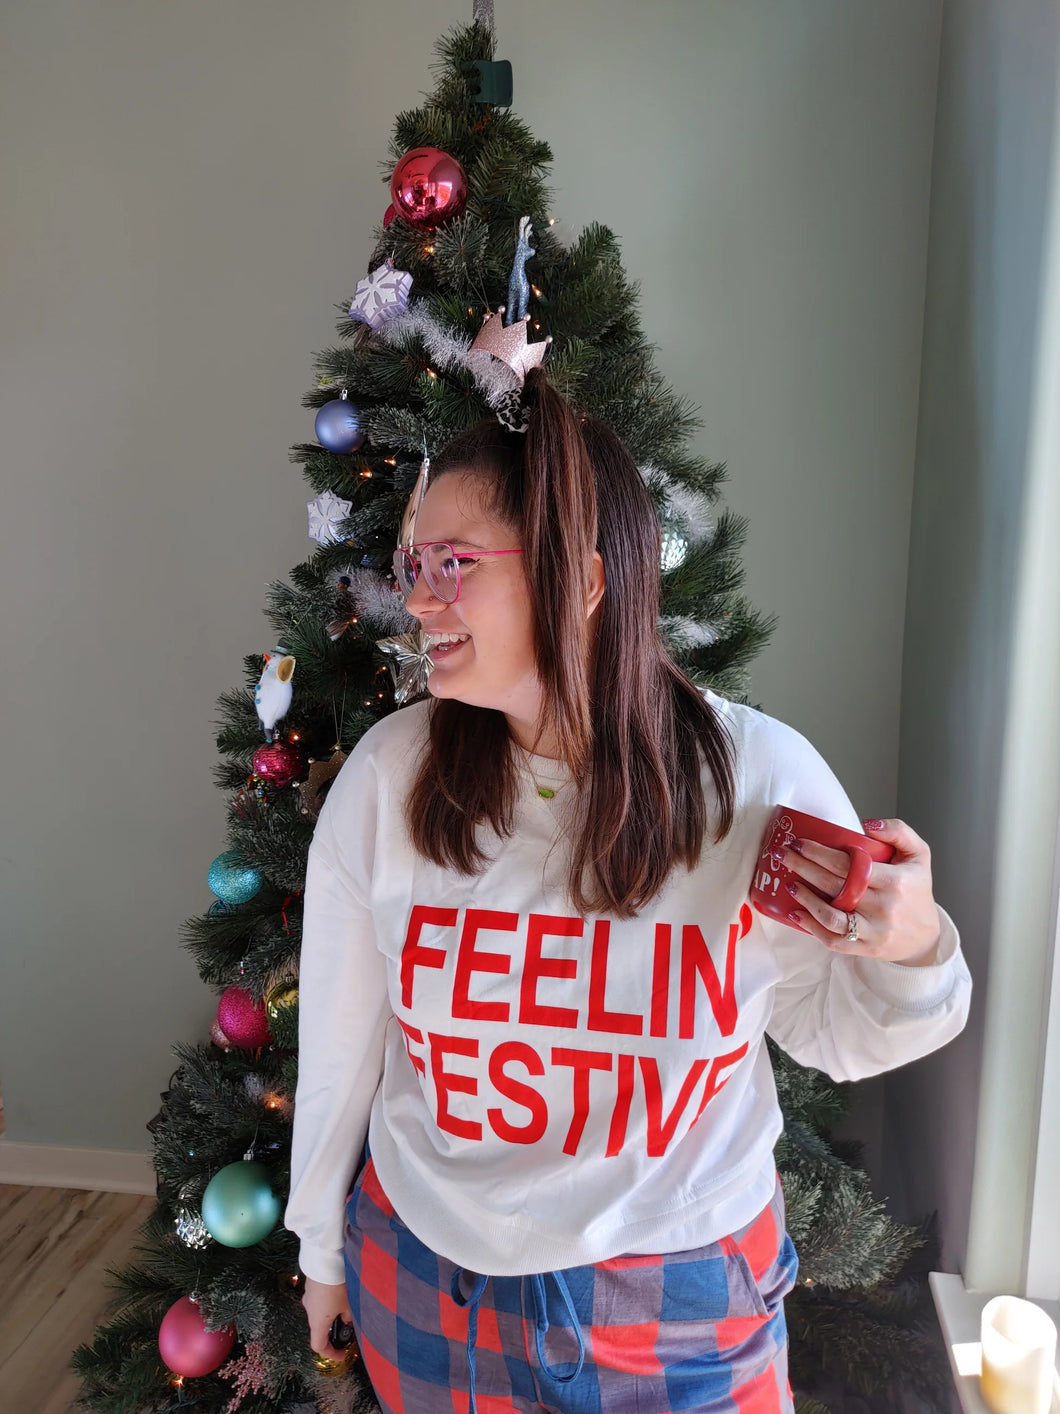 The Feelin’ Festive Set